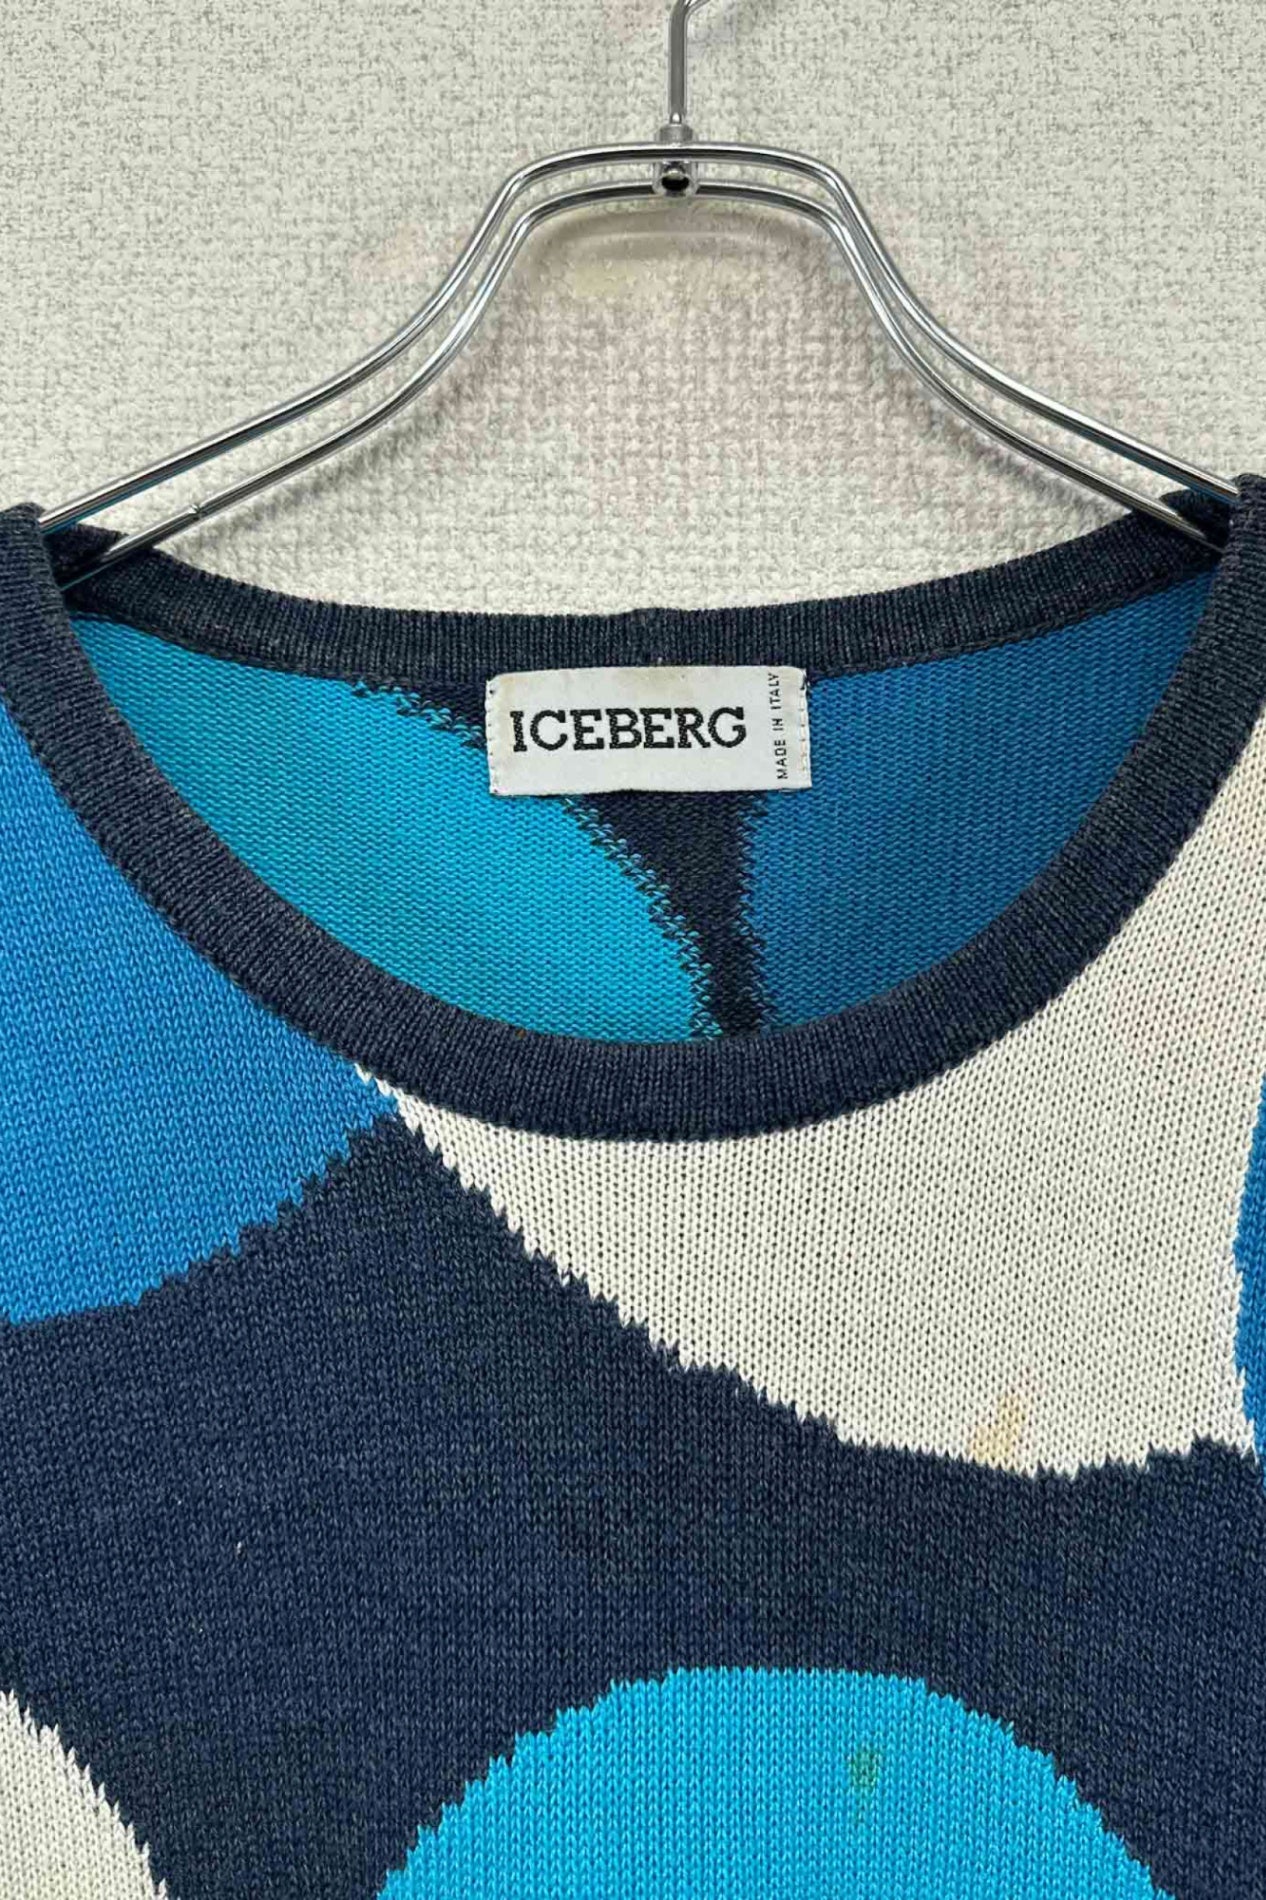 90 年代意大利制造 ICEBERG 米奇毛衣